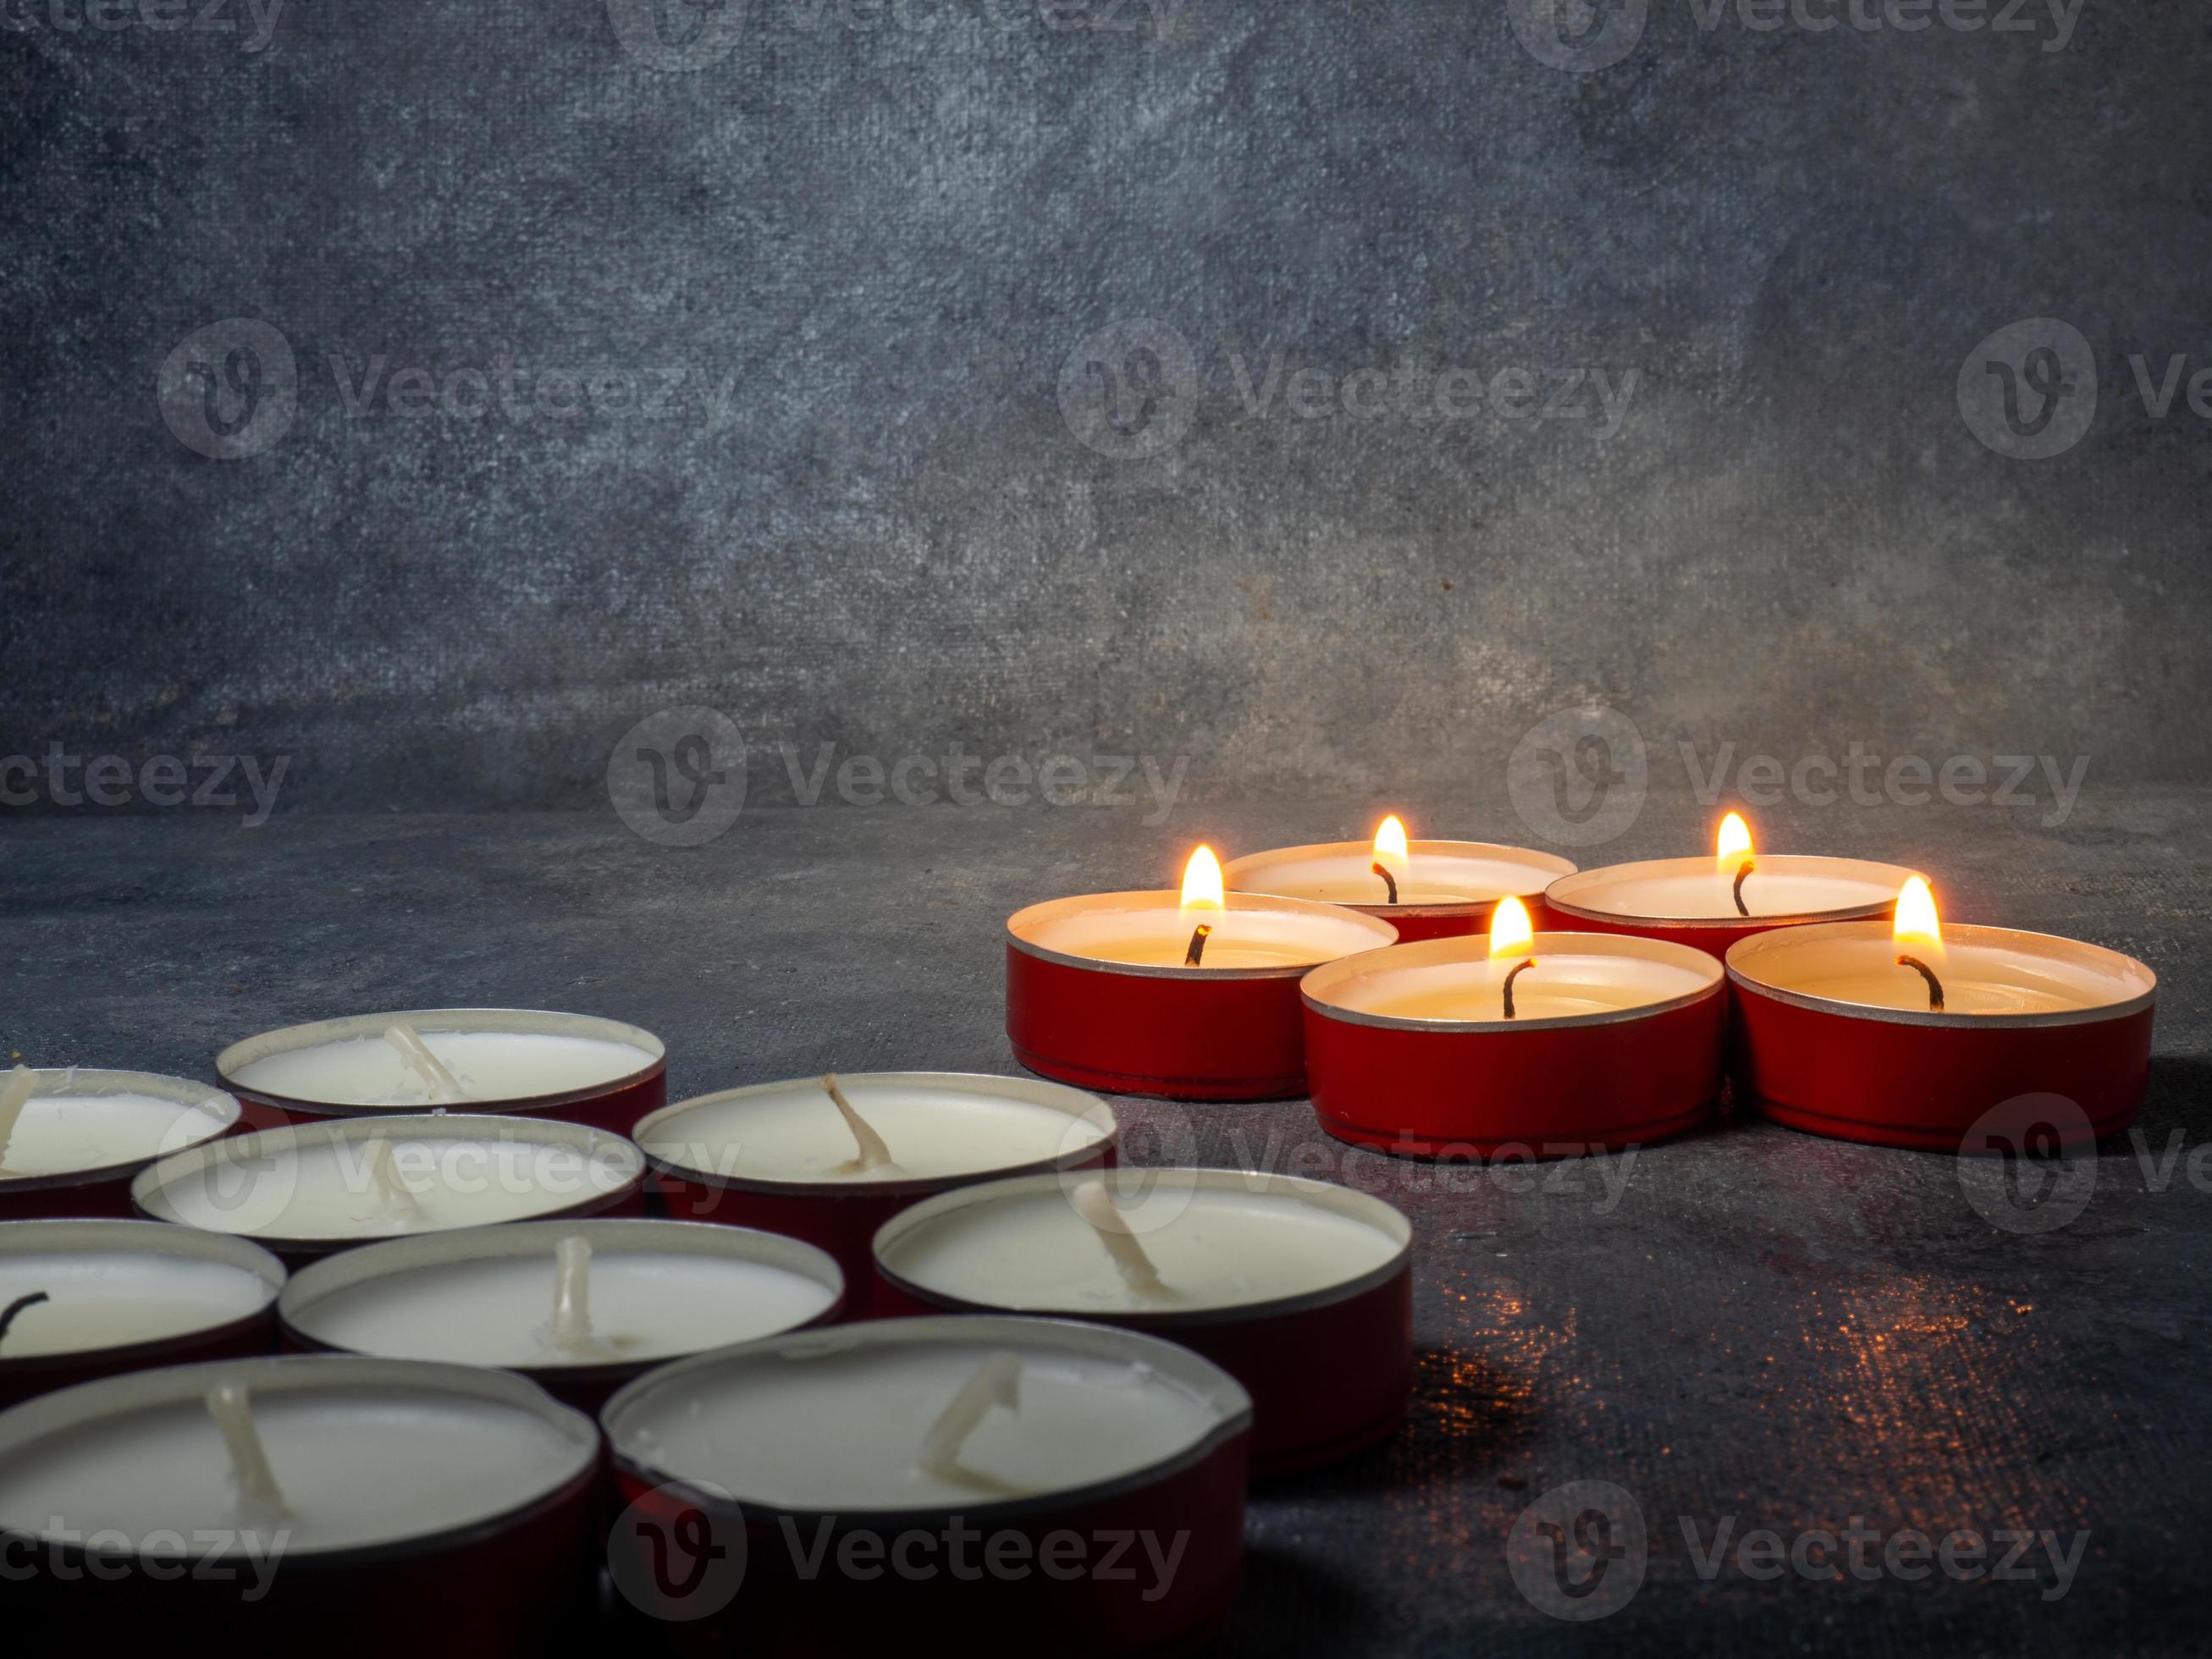 candele corte stanno bruciando su uno sfondo scuro. tante piccole candele.  non tutte le candele sono accese. 9155578 Stock Photo su Vecteezy